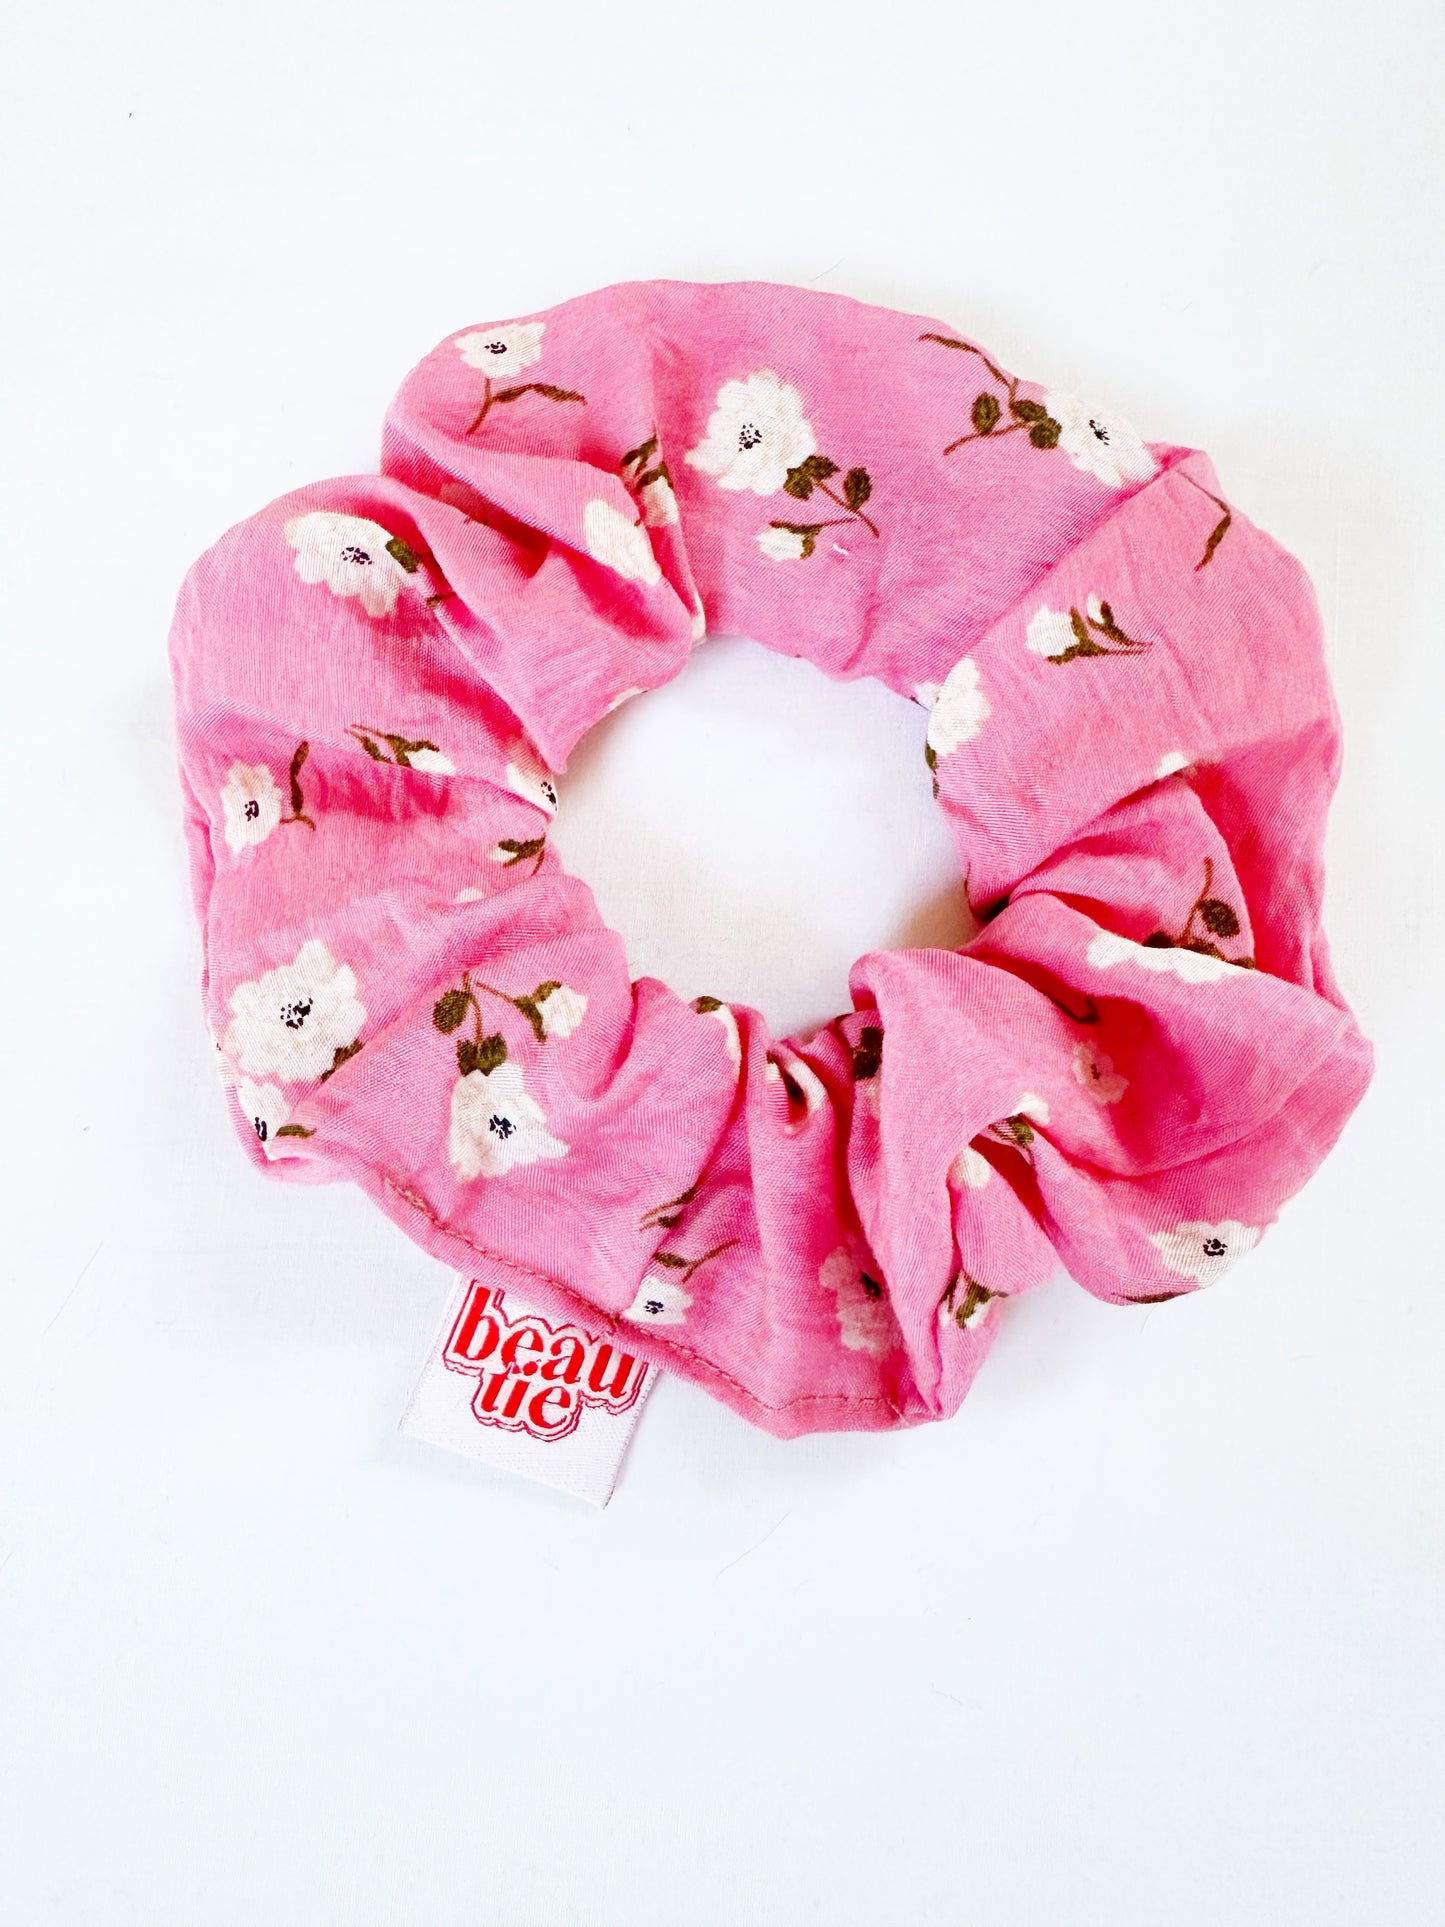 OG scrunchie in pink floral